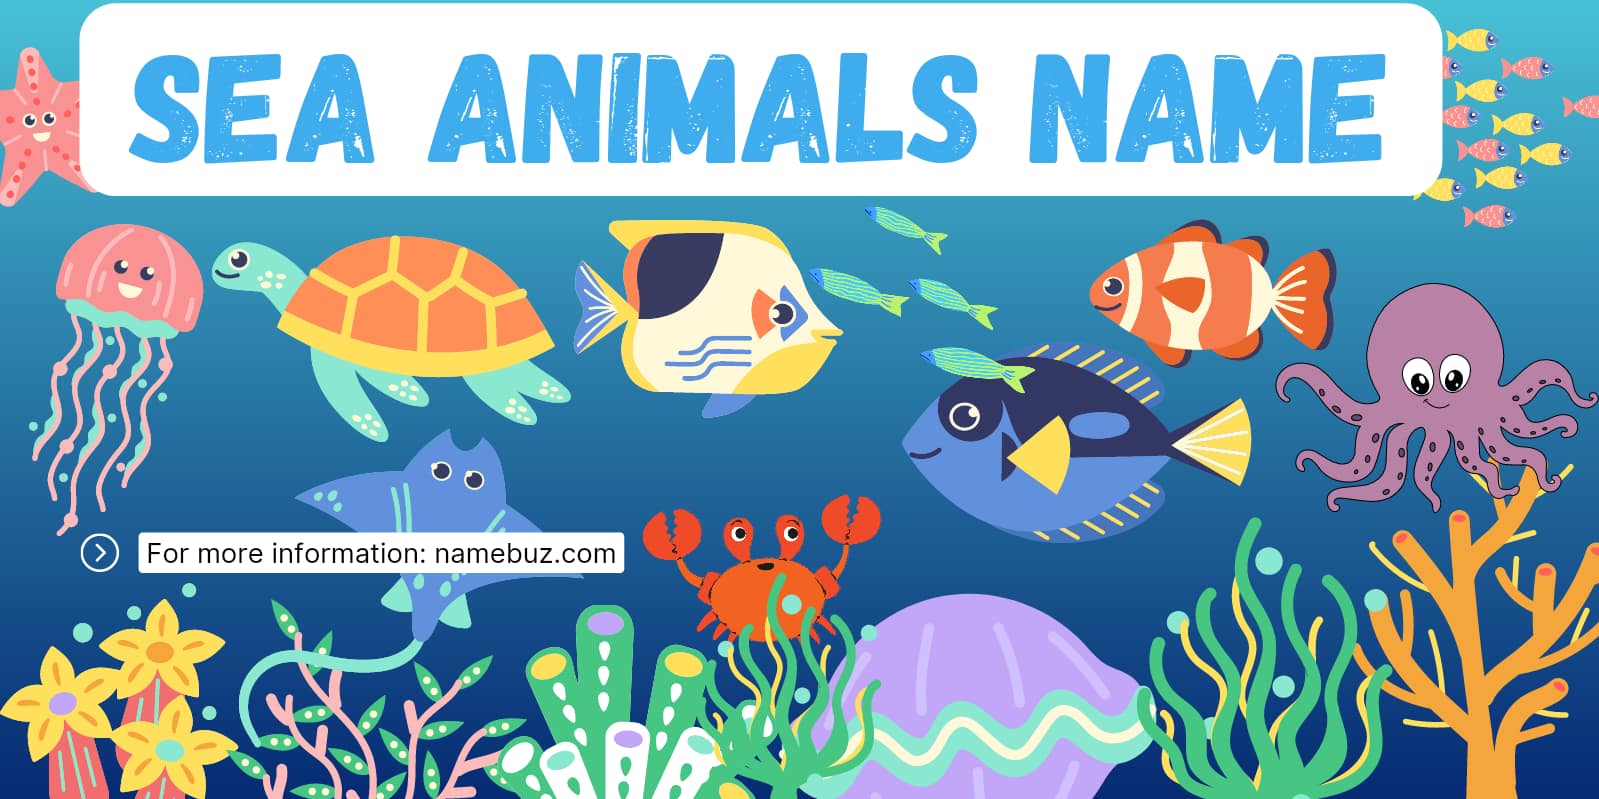 Sea animals name in English